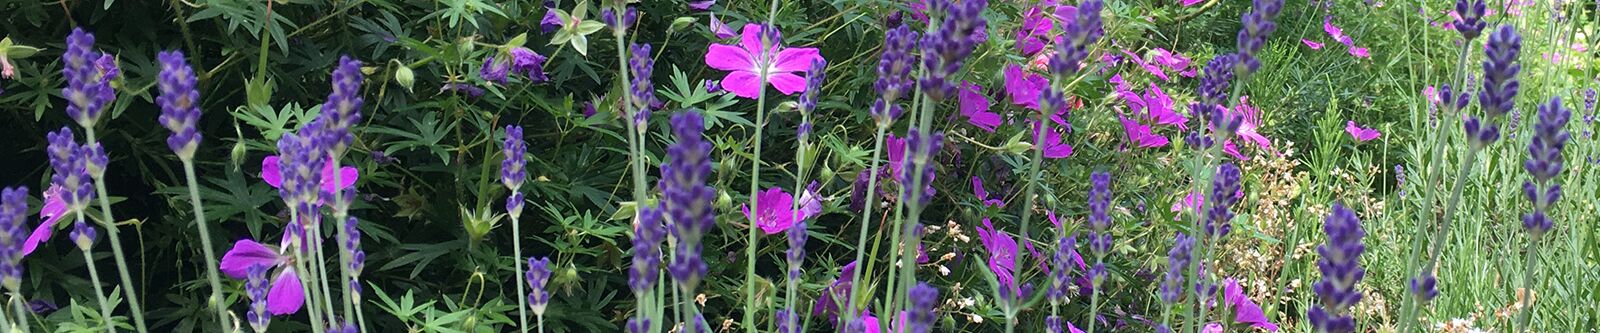 Ausschnitt Blumenbeet mit Lavendel und Storchschnabel 